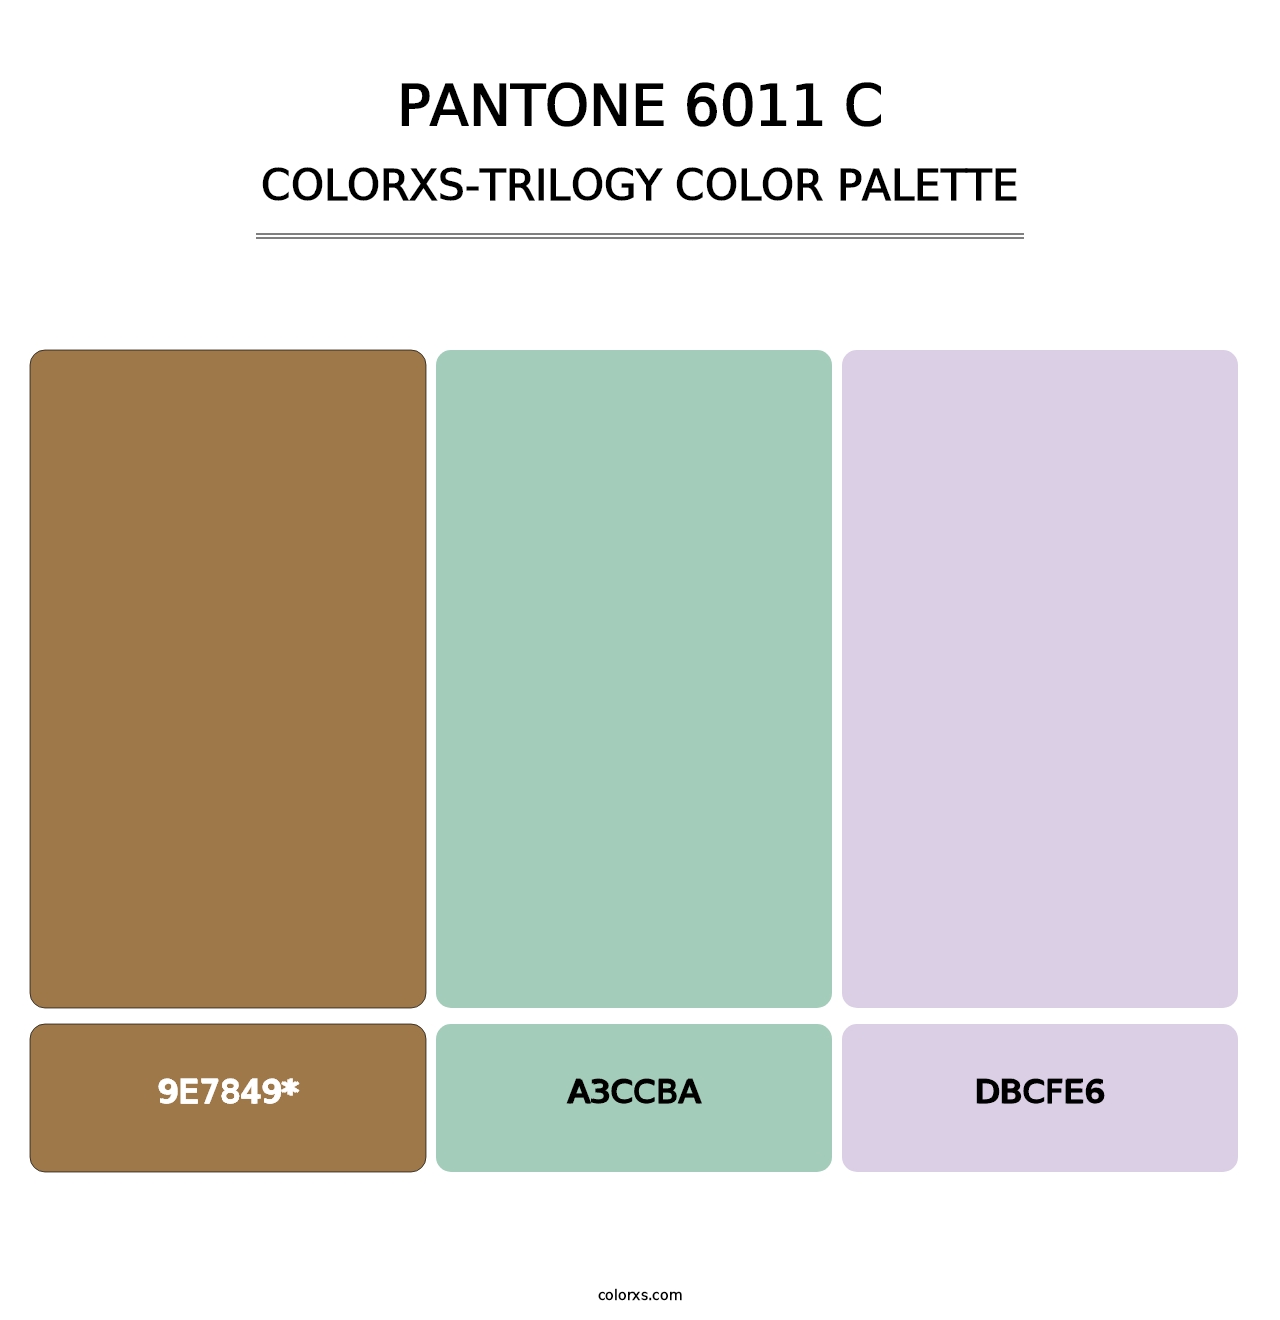 PANTONE 6011 C - Colorxs Trilogy Palette